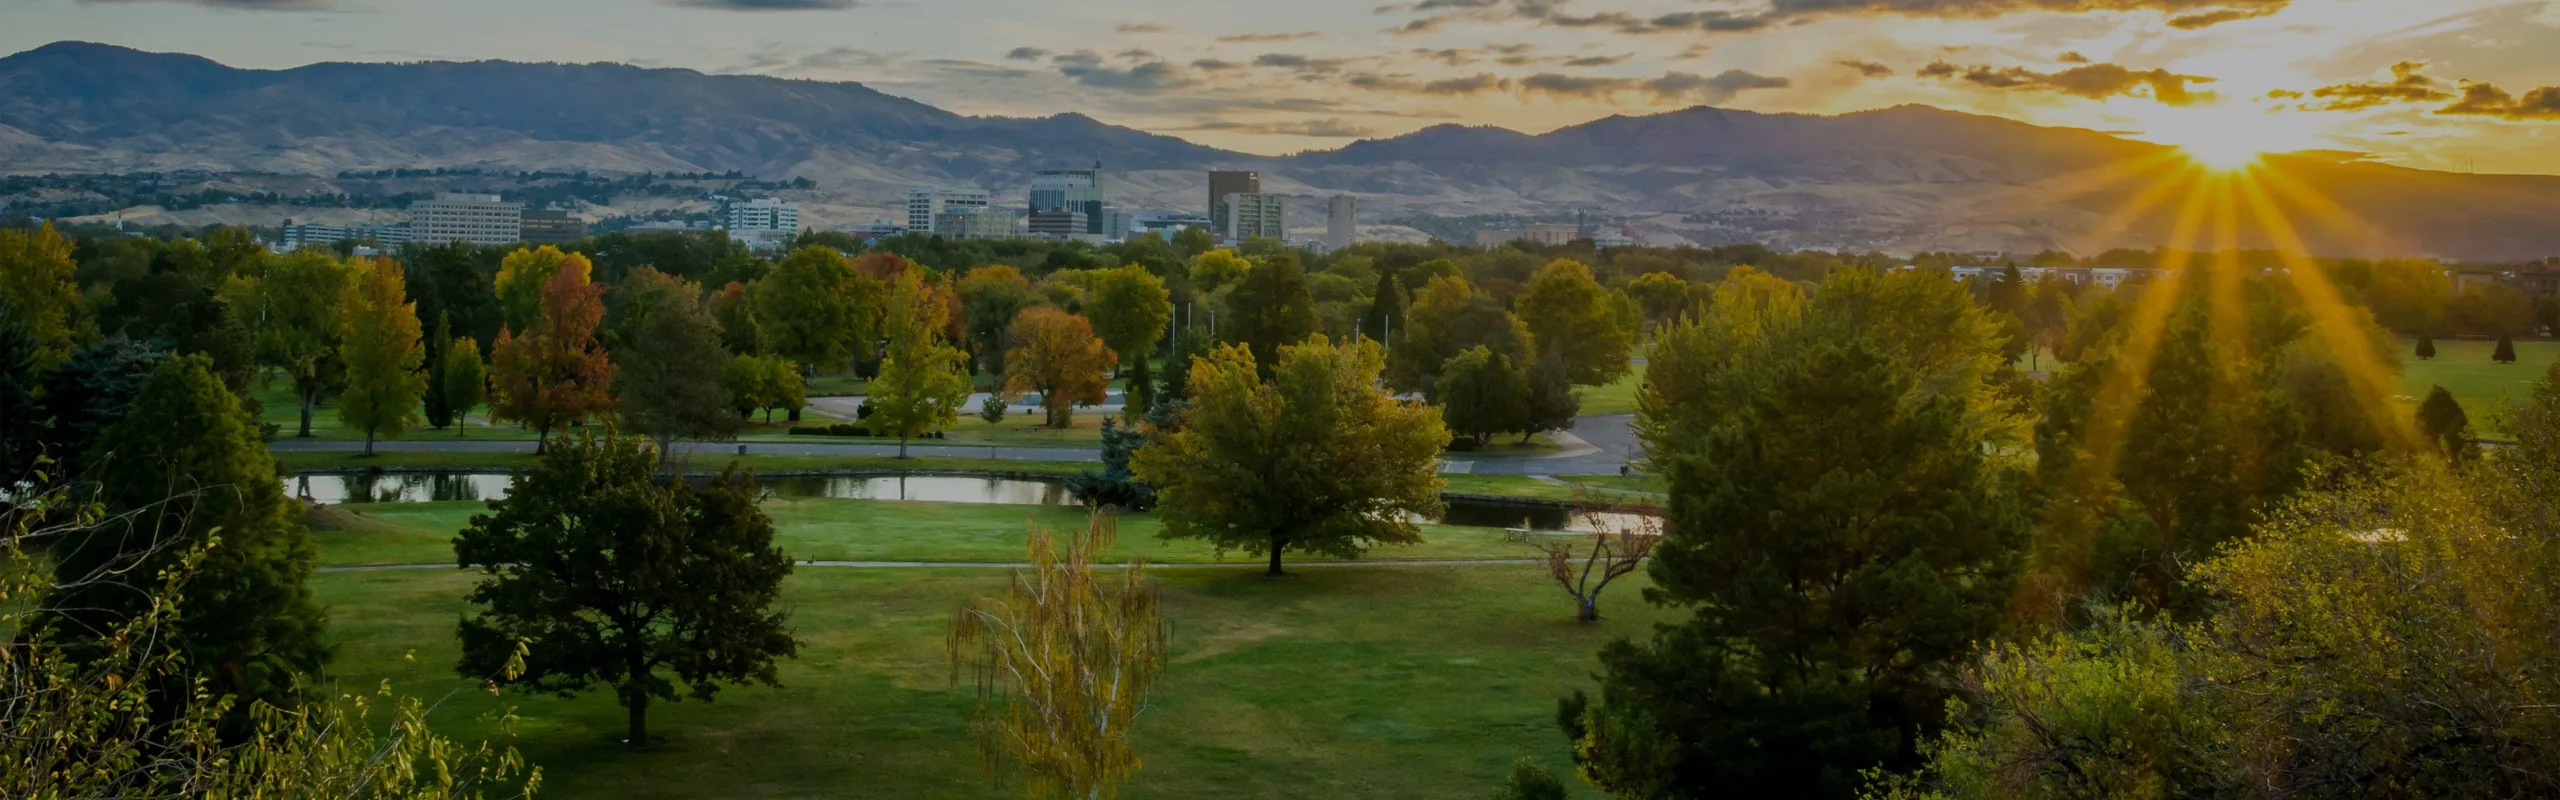 Boise, Oficina de Idaho: Anunciando nuestra nueva ubicación